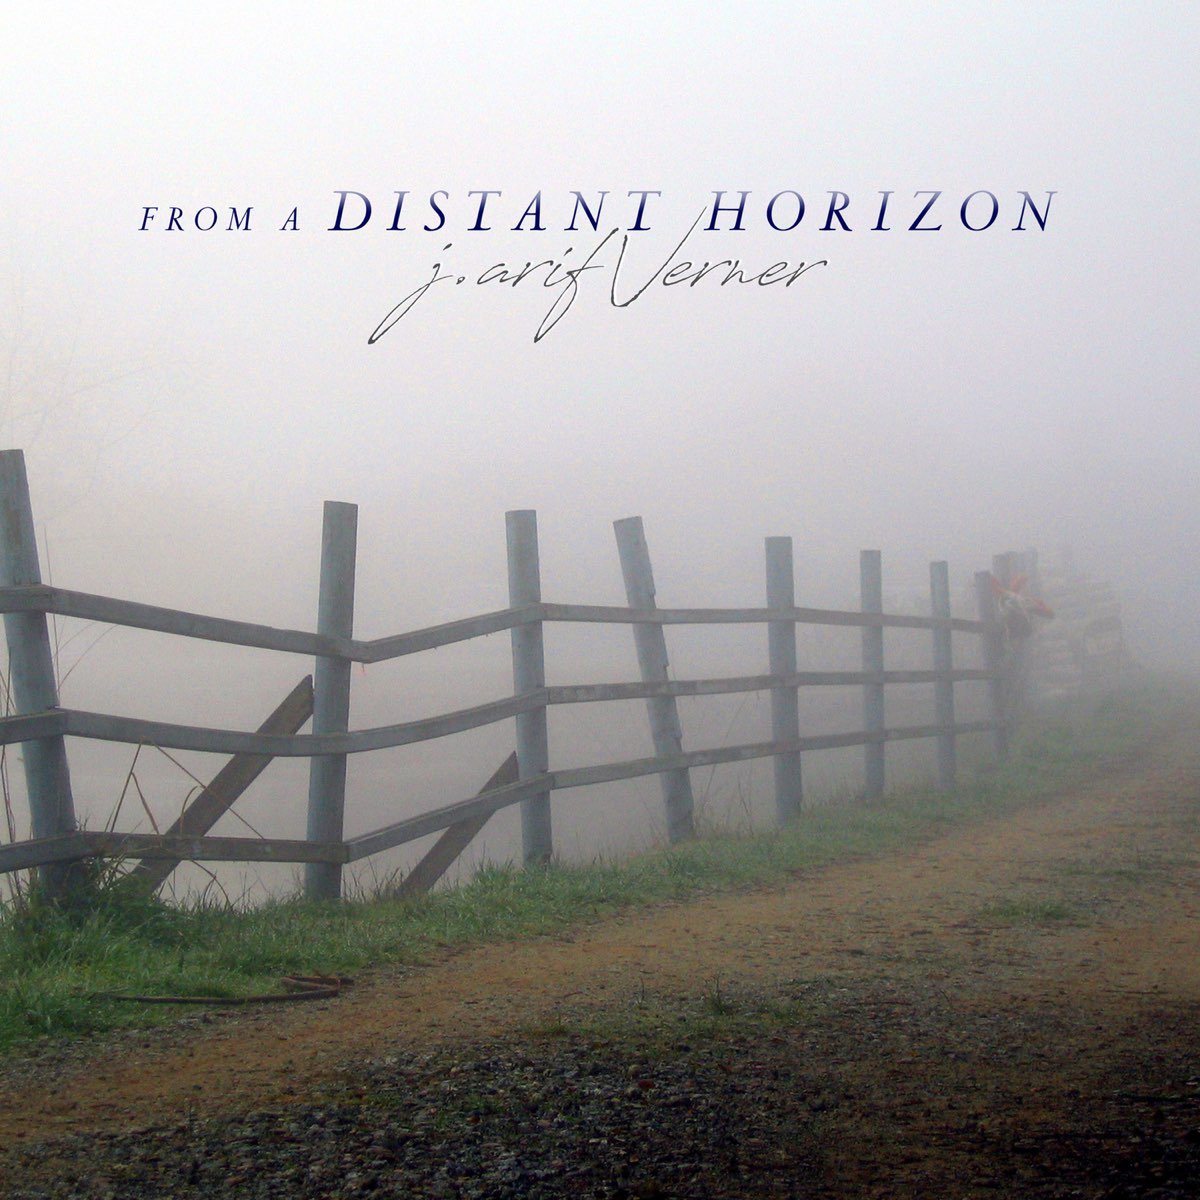 Distant horizonts. Альбом Thierry David. Distant Horizons. Distant Heritage. Distant Horizons обзор.